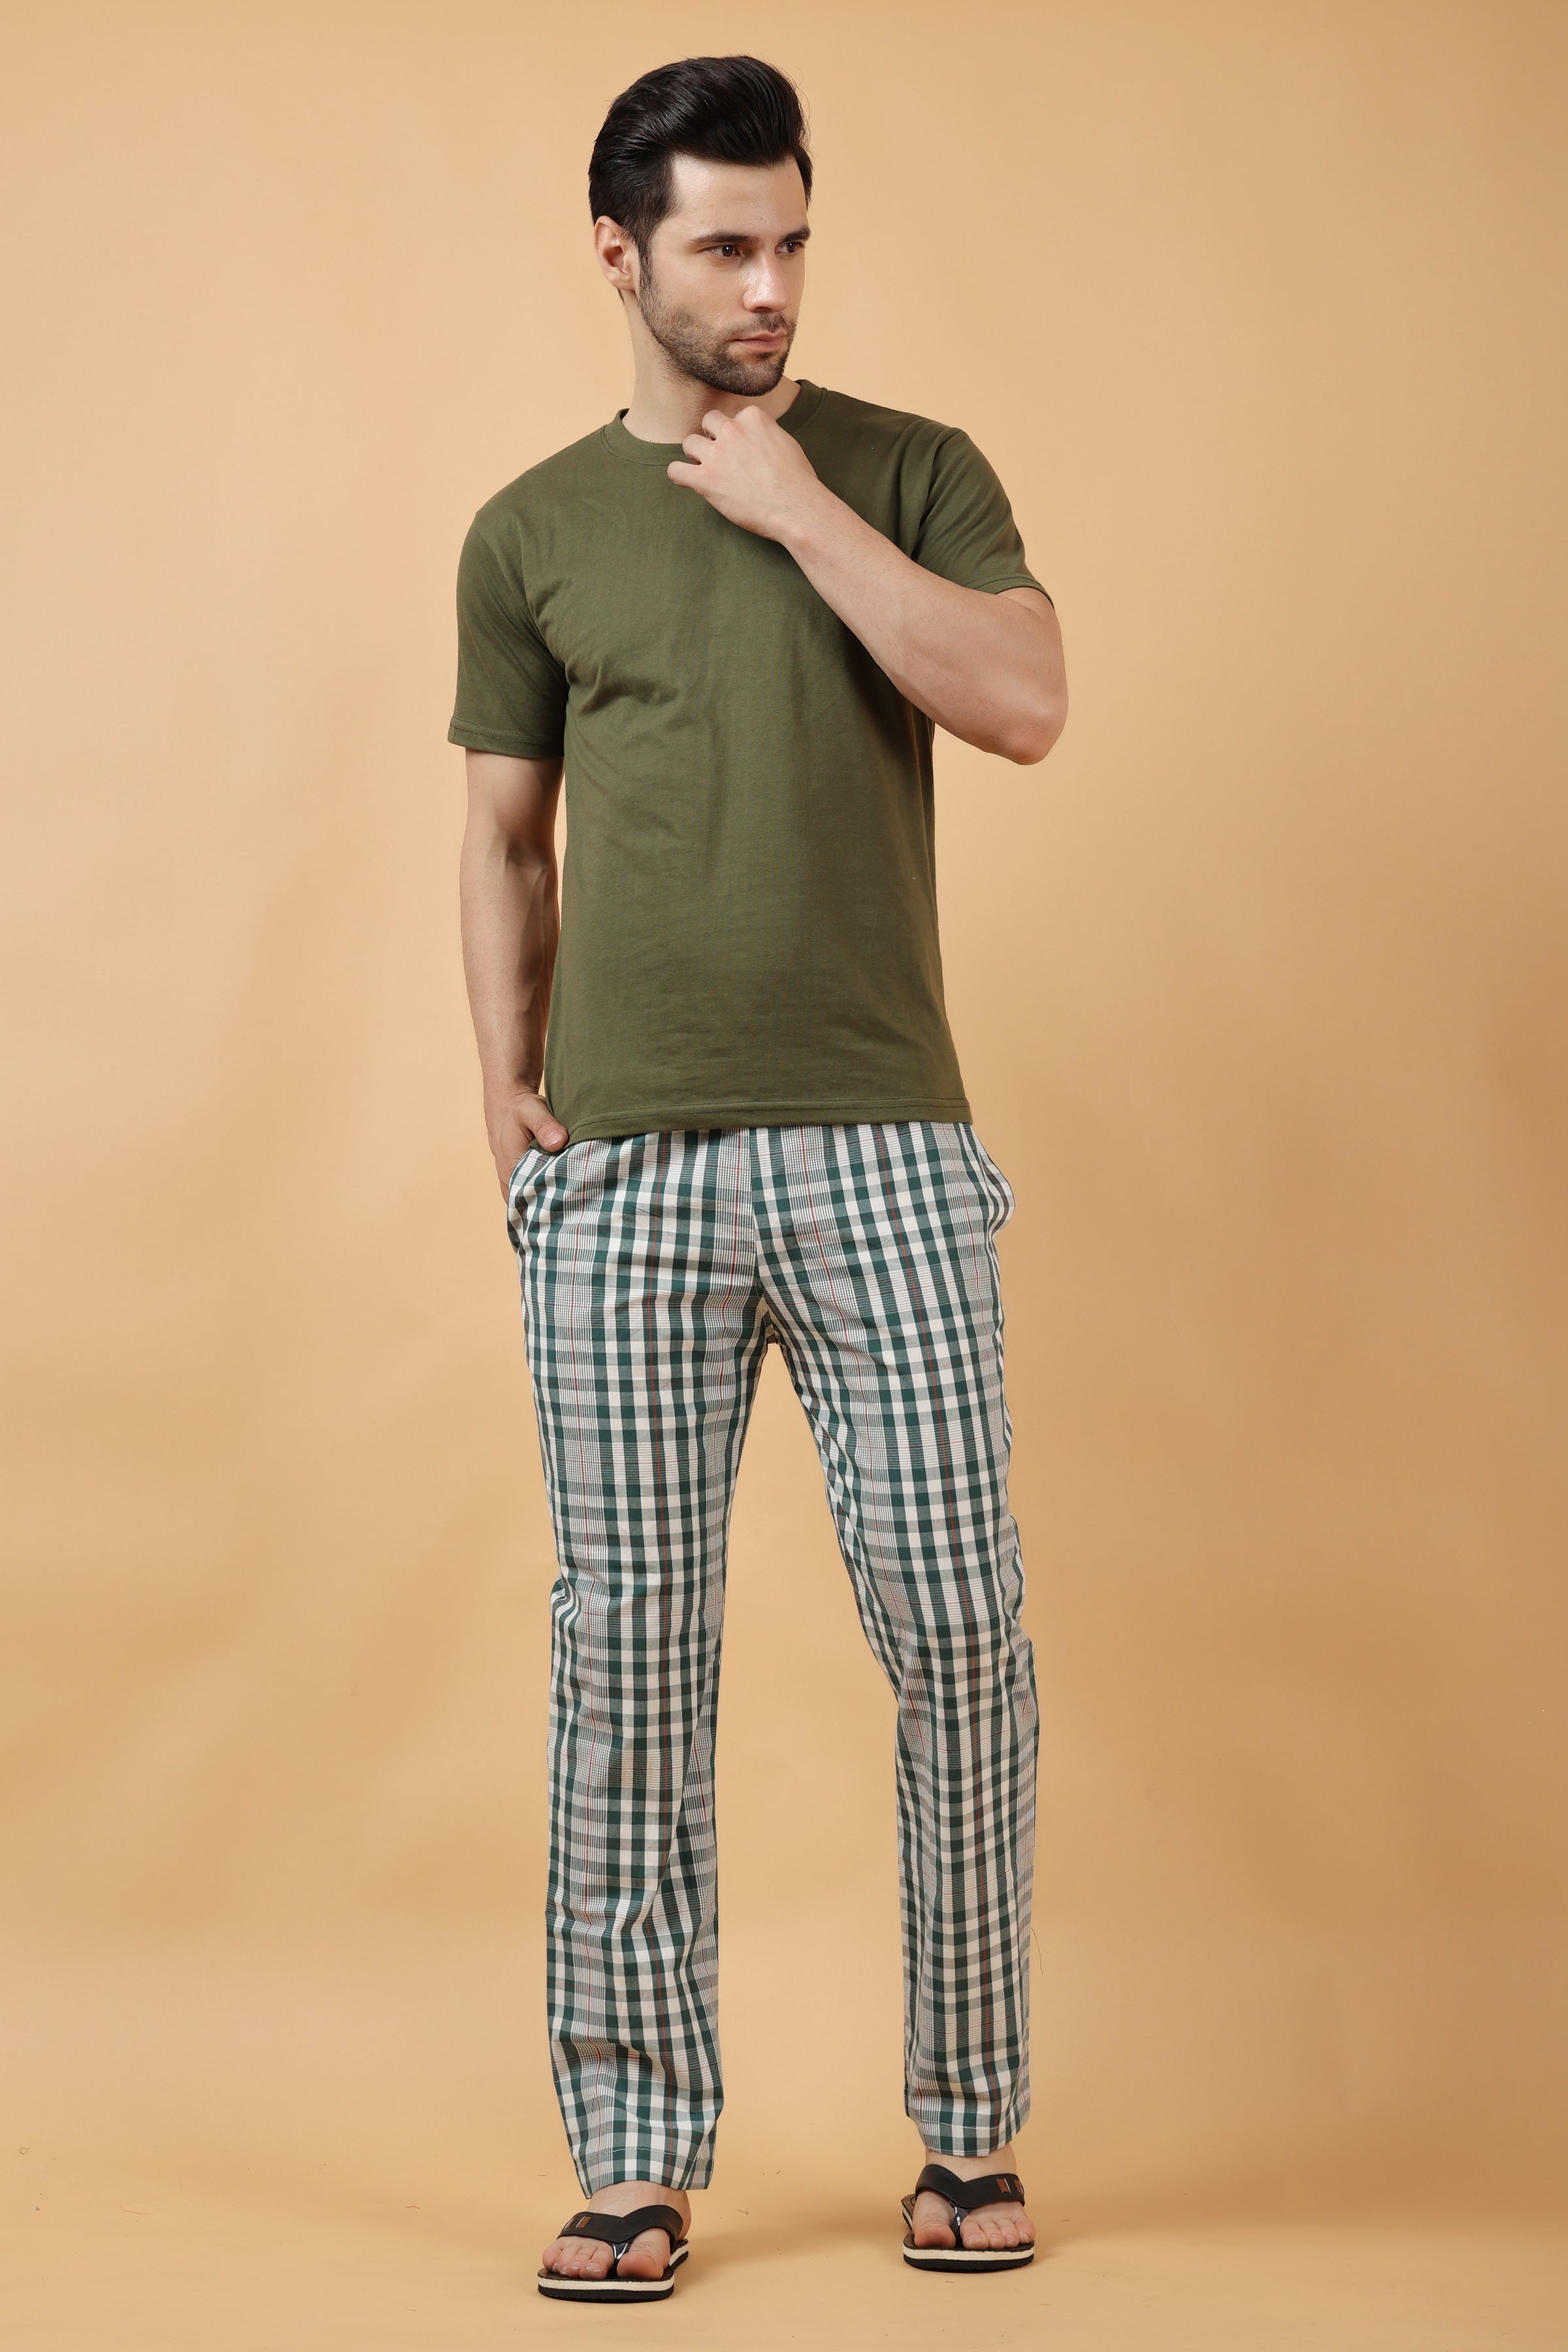 Custom Pajamas for Men Create Personalized Pajama Pants